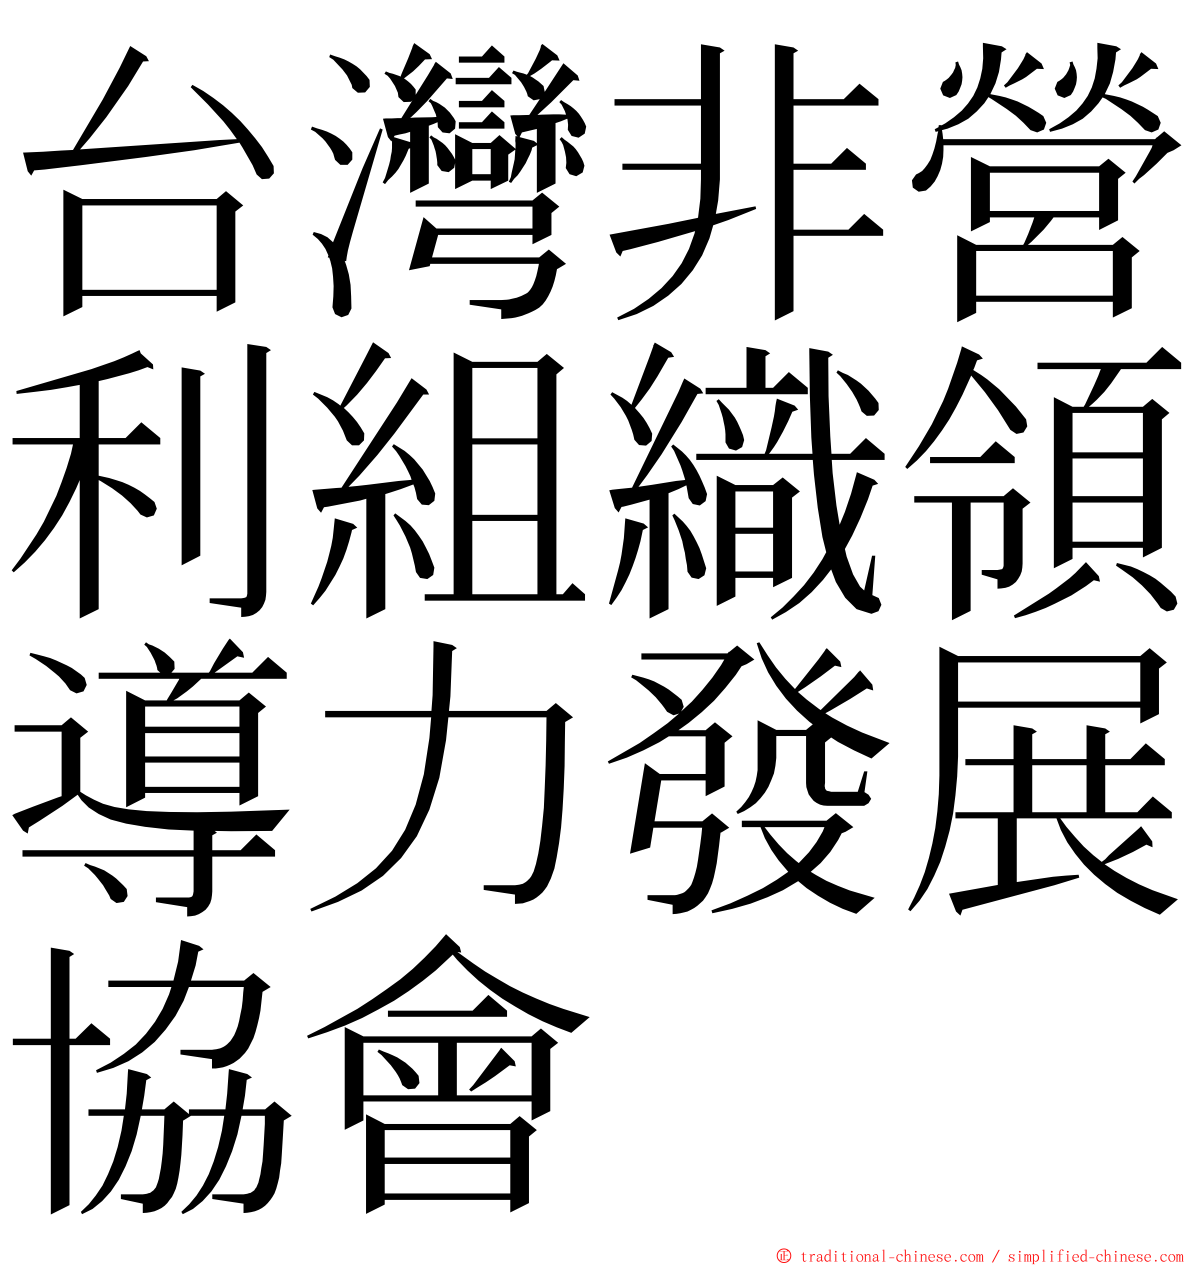 台灣非營利組織領導力發展協會 ming font